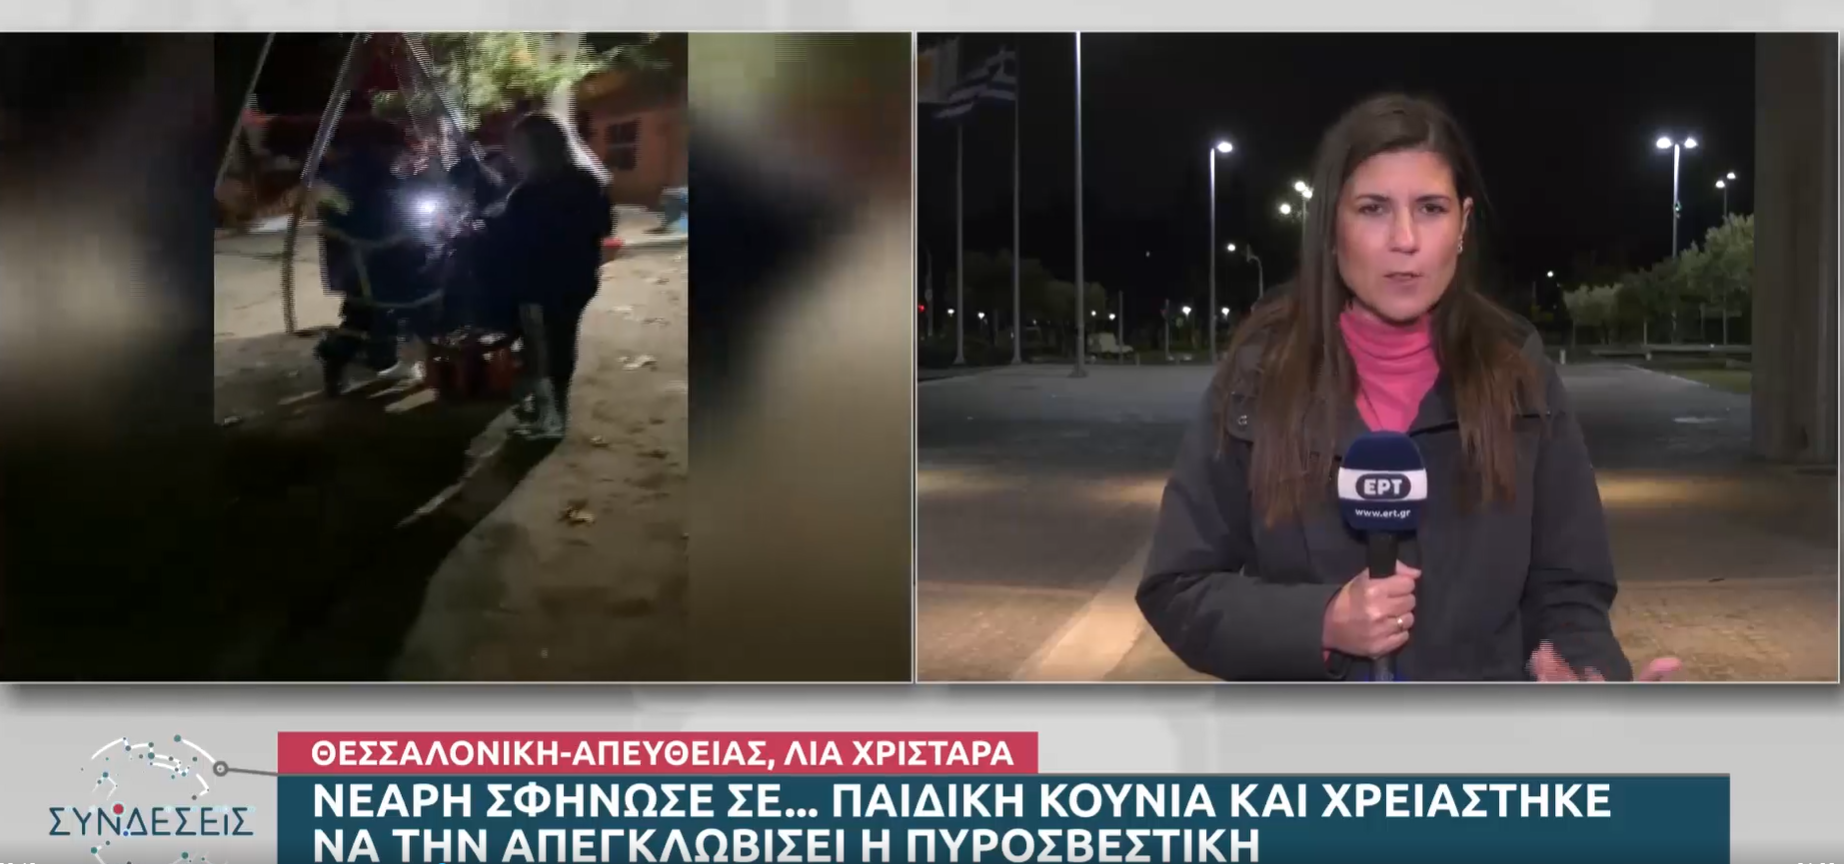 Θεσσαλονίκη: Νεαρή σφήνωσε σε κούνια παιδικής χαράς – Την απεγκλώβισε η Πυροσβεστική (video)